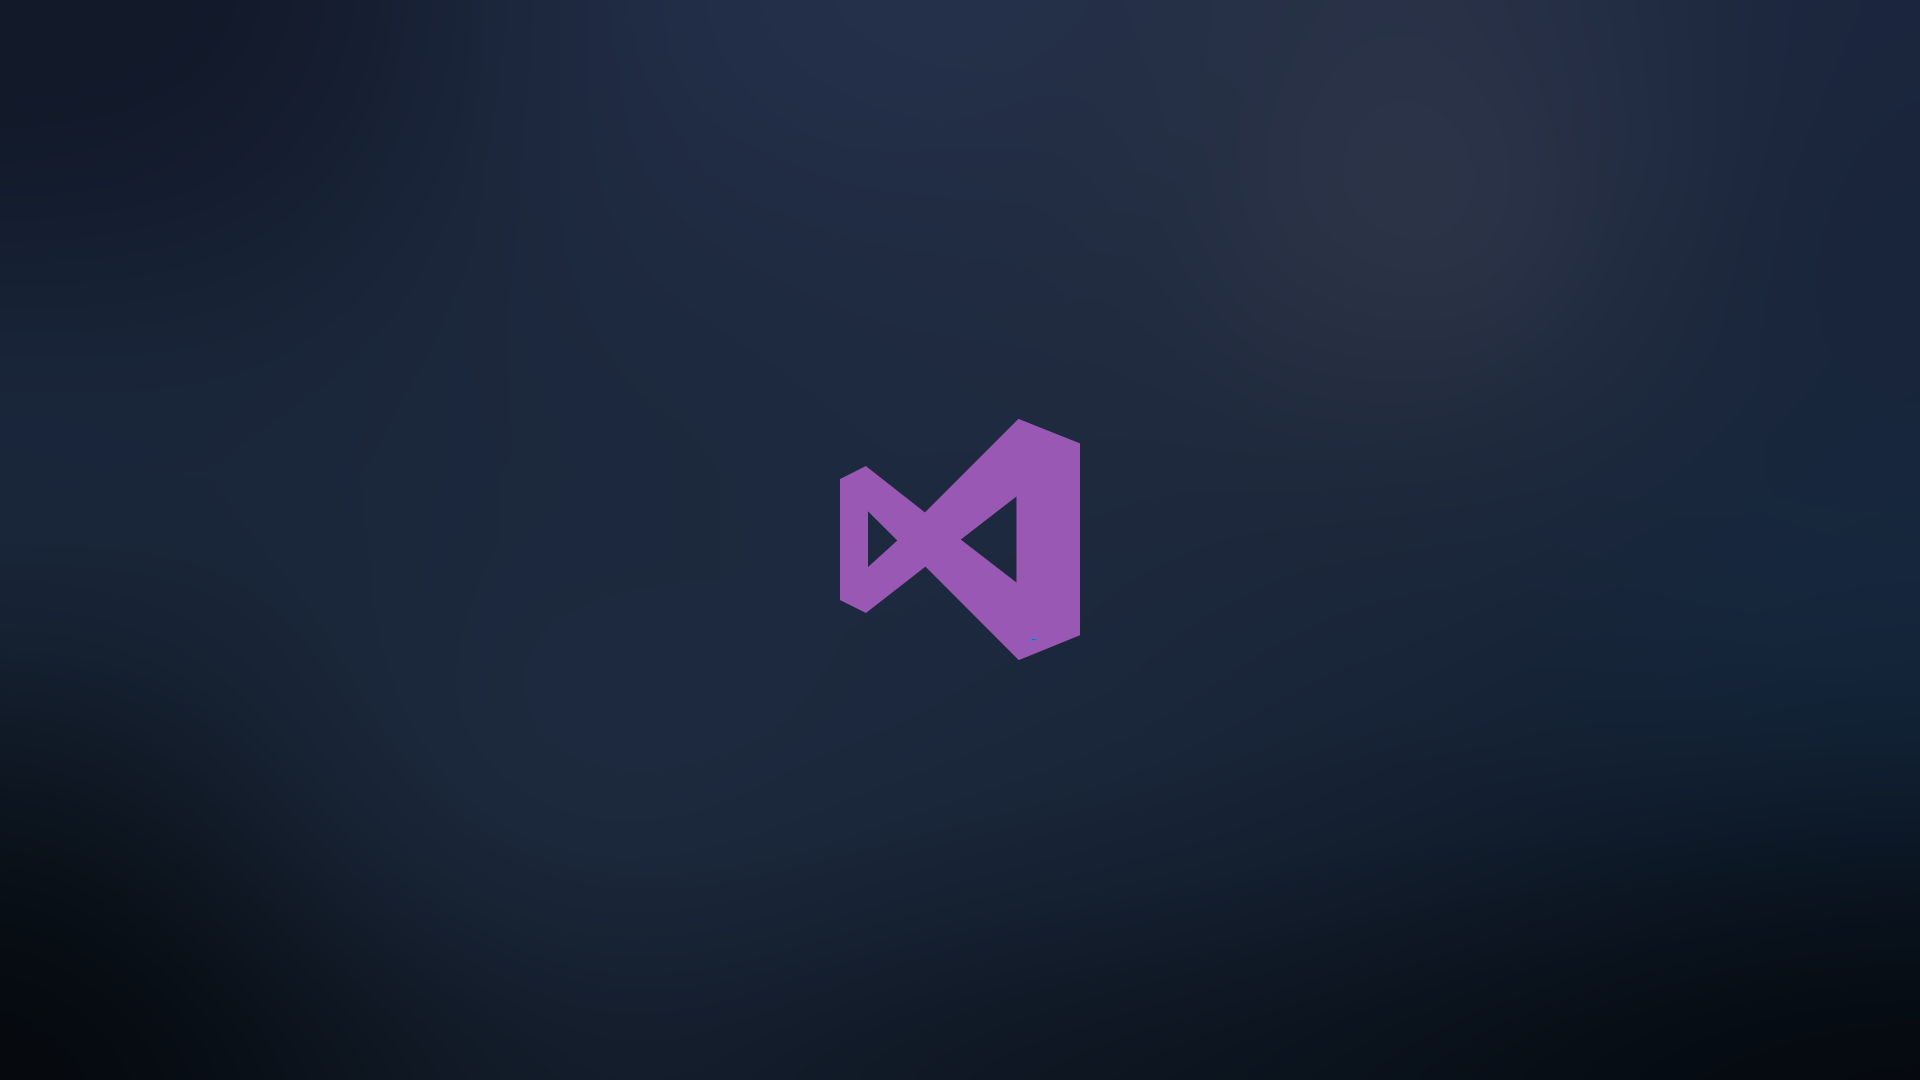 download visual studio code for ubuntu 18.04